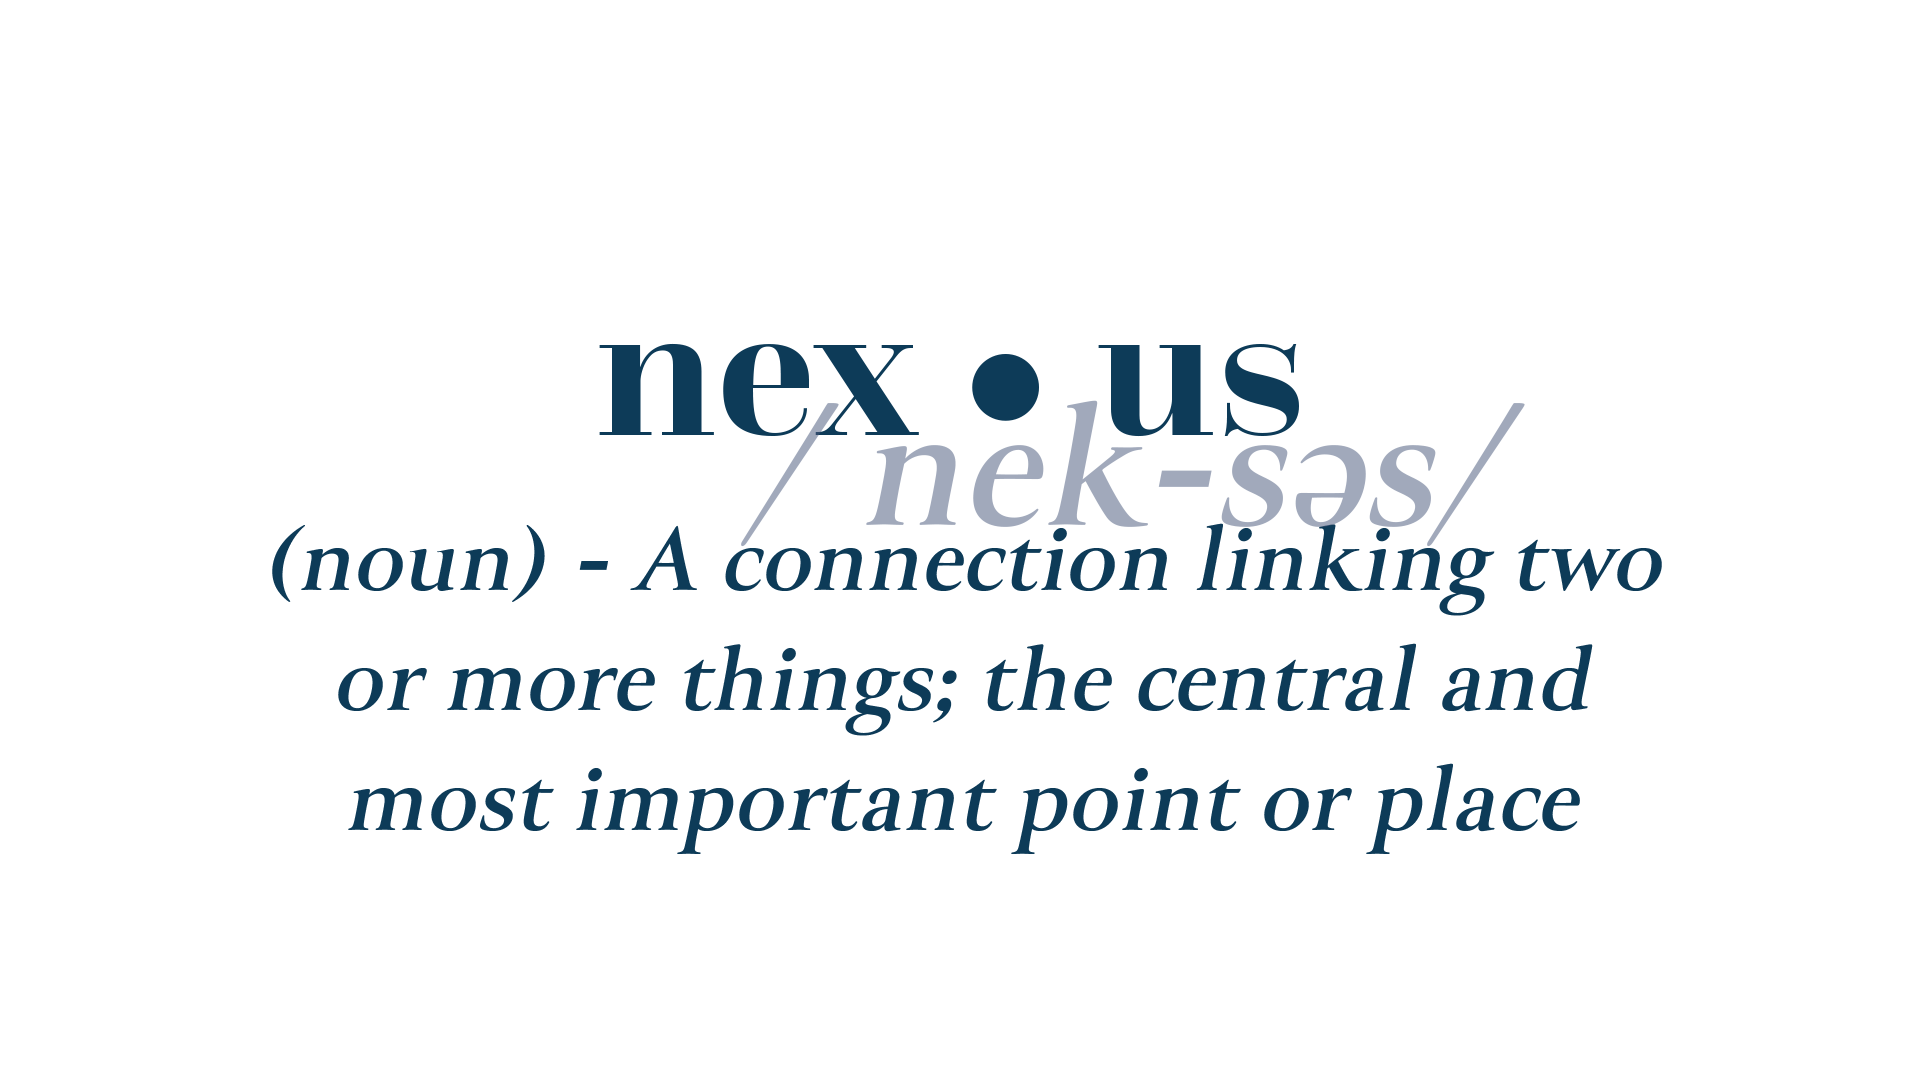 nexus definition